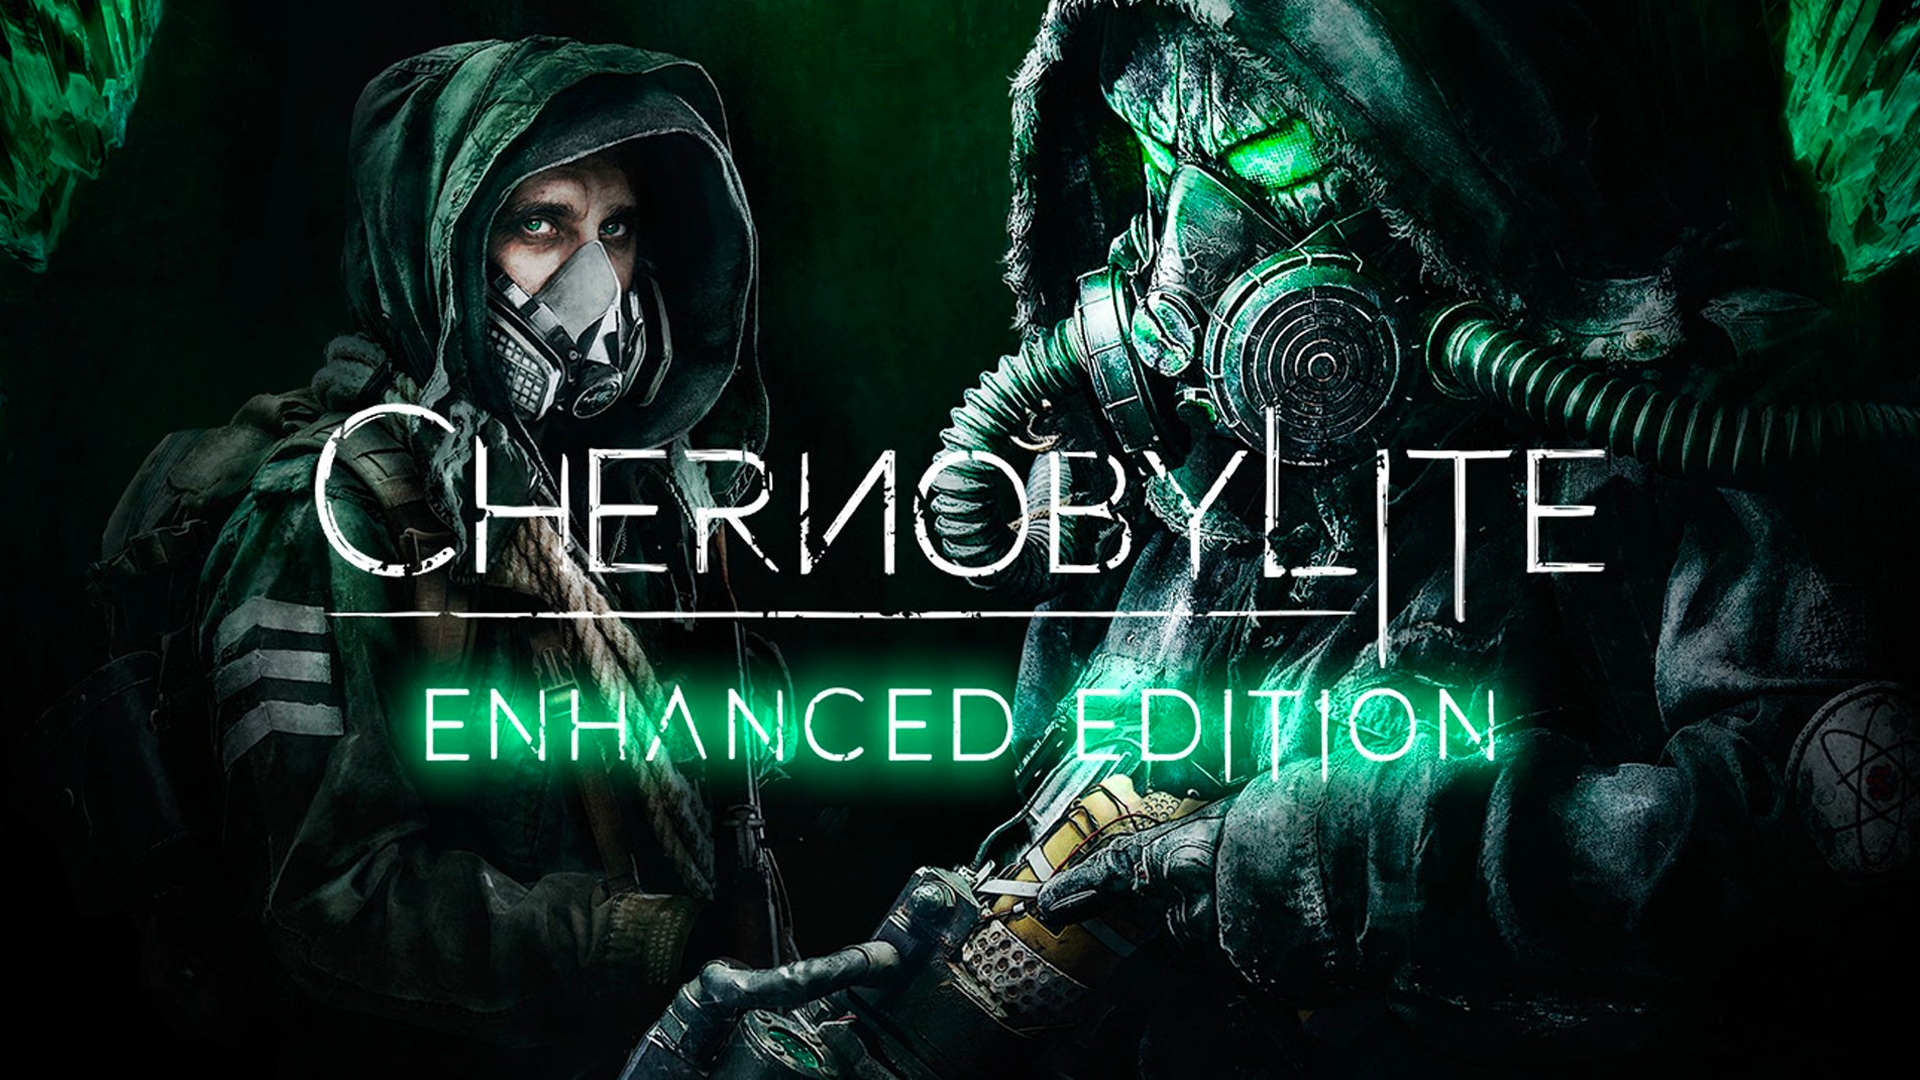 Chernobylite enhanced